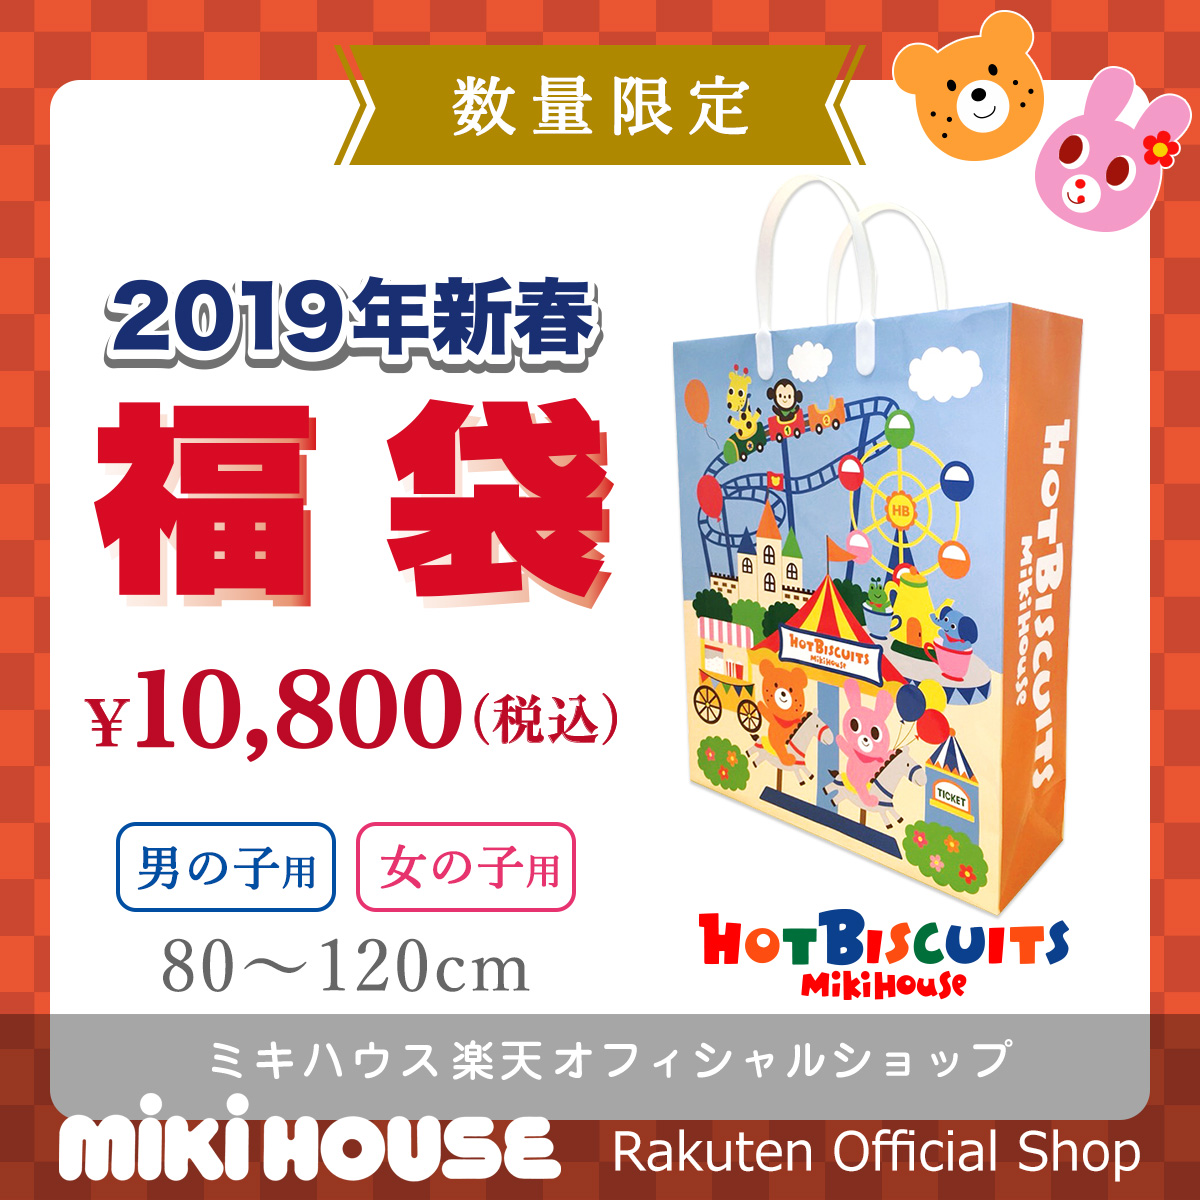 【楽天】ミキハウス ホットビスケッツ mikihouse 1万円福袋(80cm-120cm) バーゲンの売れ筋人気ランキング商品